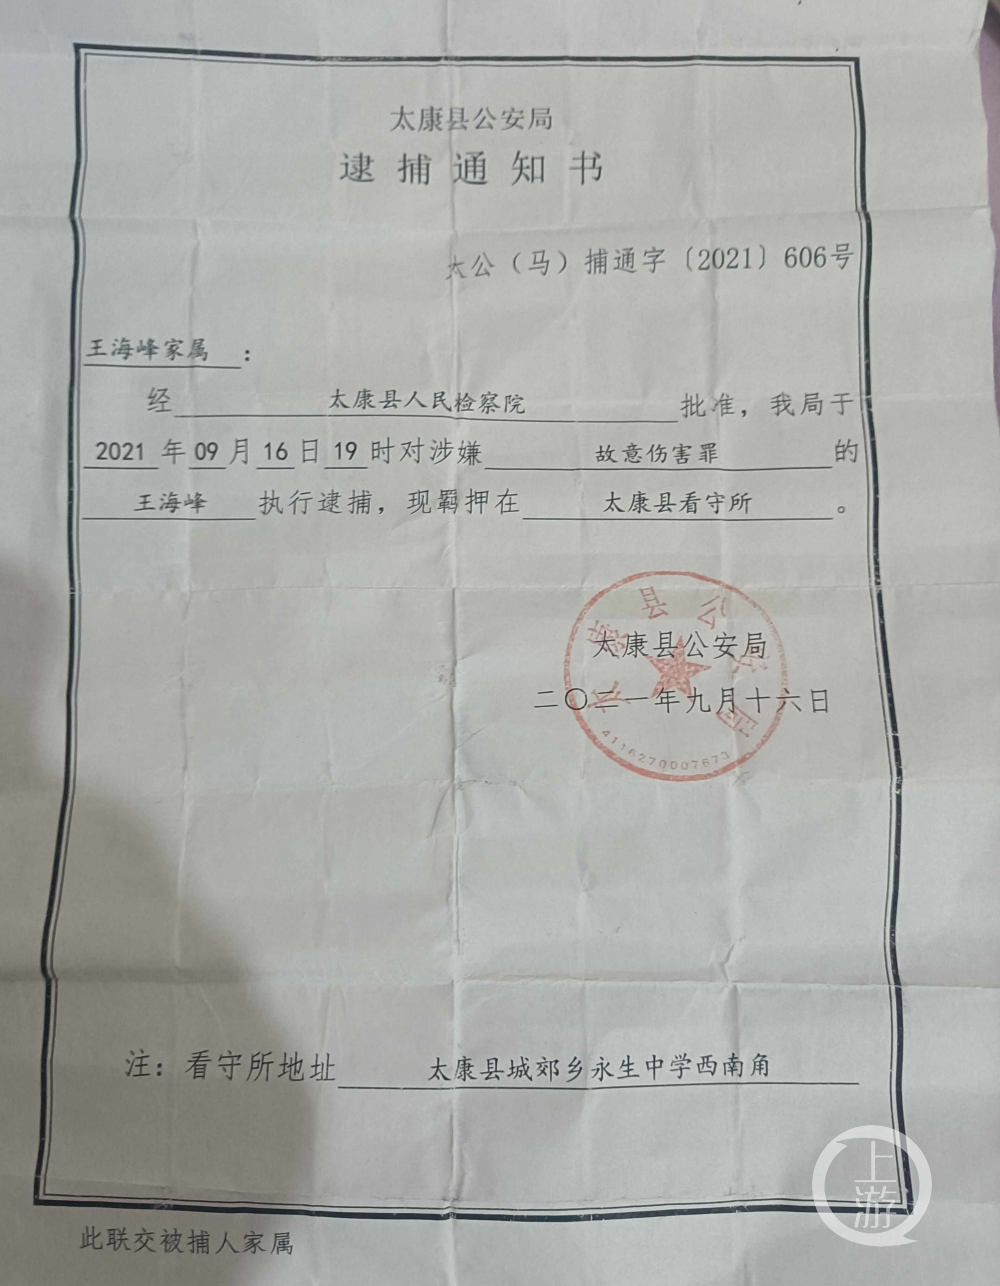 杨庄小学校长王海峰的家属领到了逮捕通知书,叹气说:太窝火了